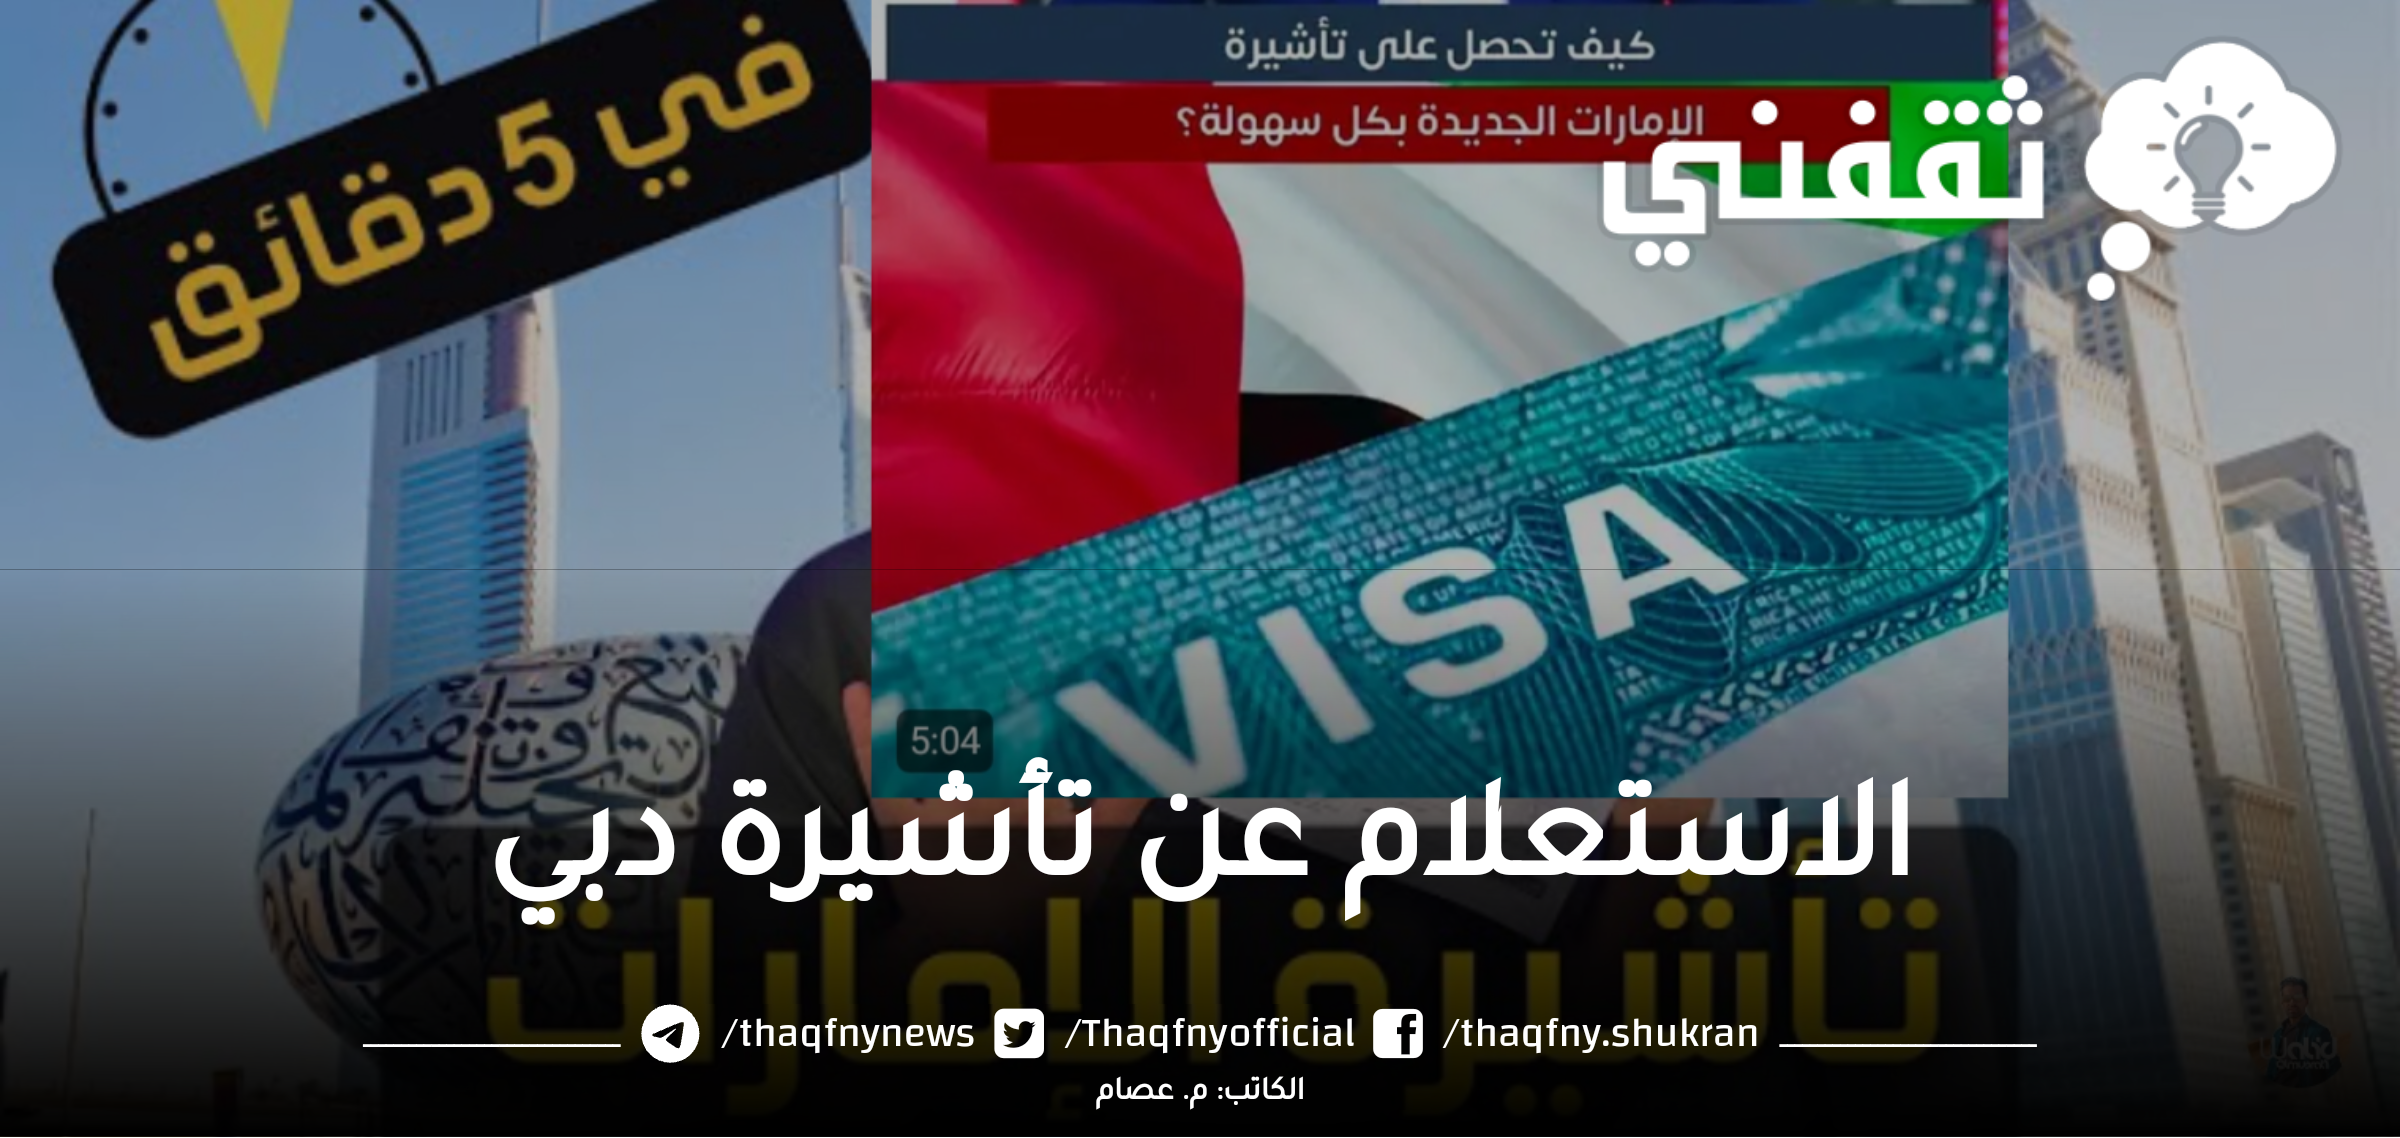 الاستعلام عن تأشيرة دبي برقم الجواز بالطريقة الحديثة في 3 دقائق